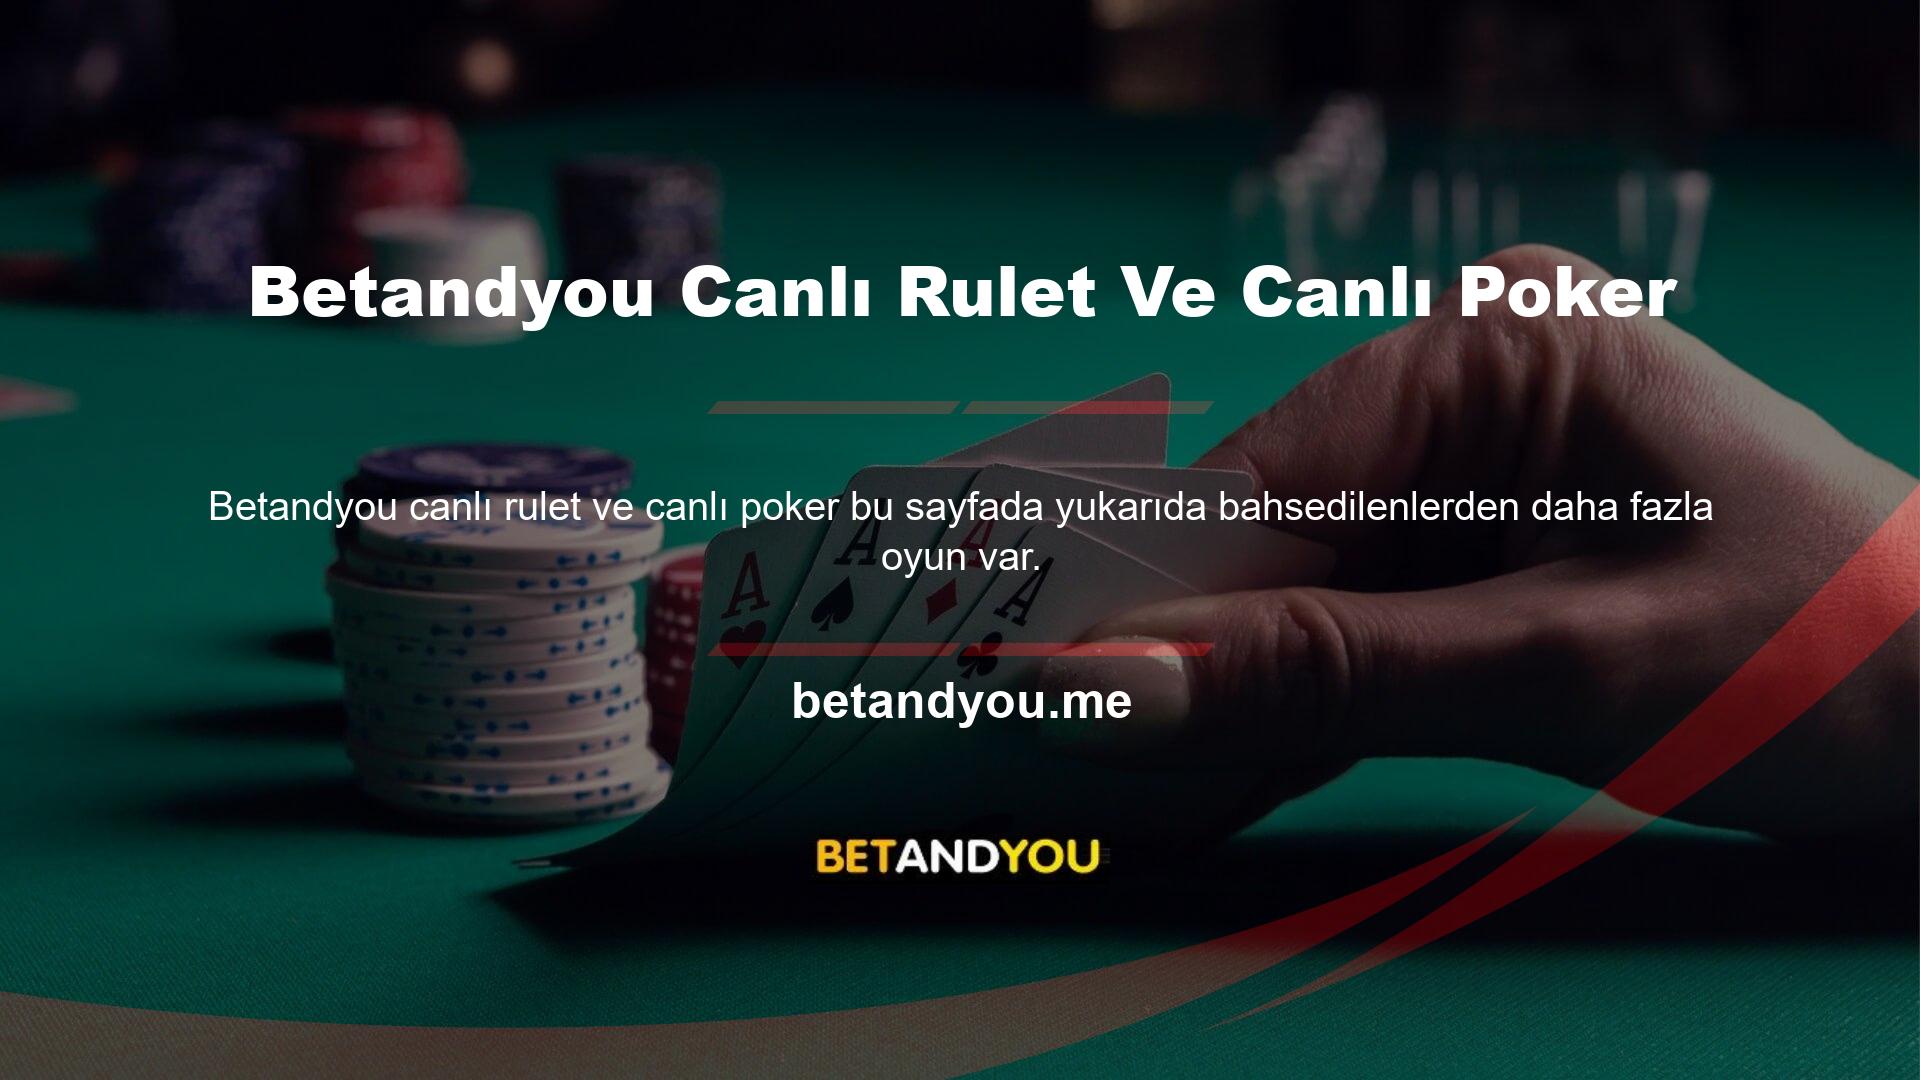 Betandyou Canlı Casino Poker'deki teklifler arasında Texas Hold'em Bonus Poker, Solitaire Poker ve Üç Kartlı Poker bulunmaktadır